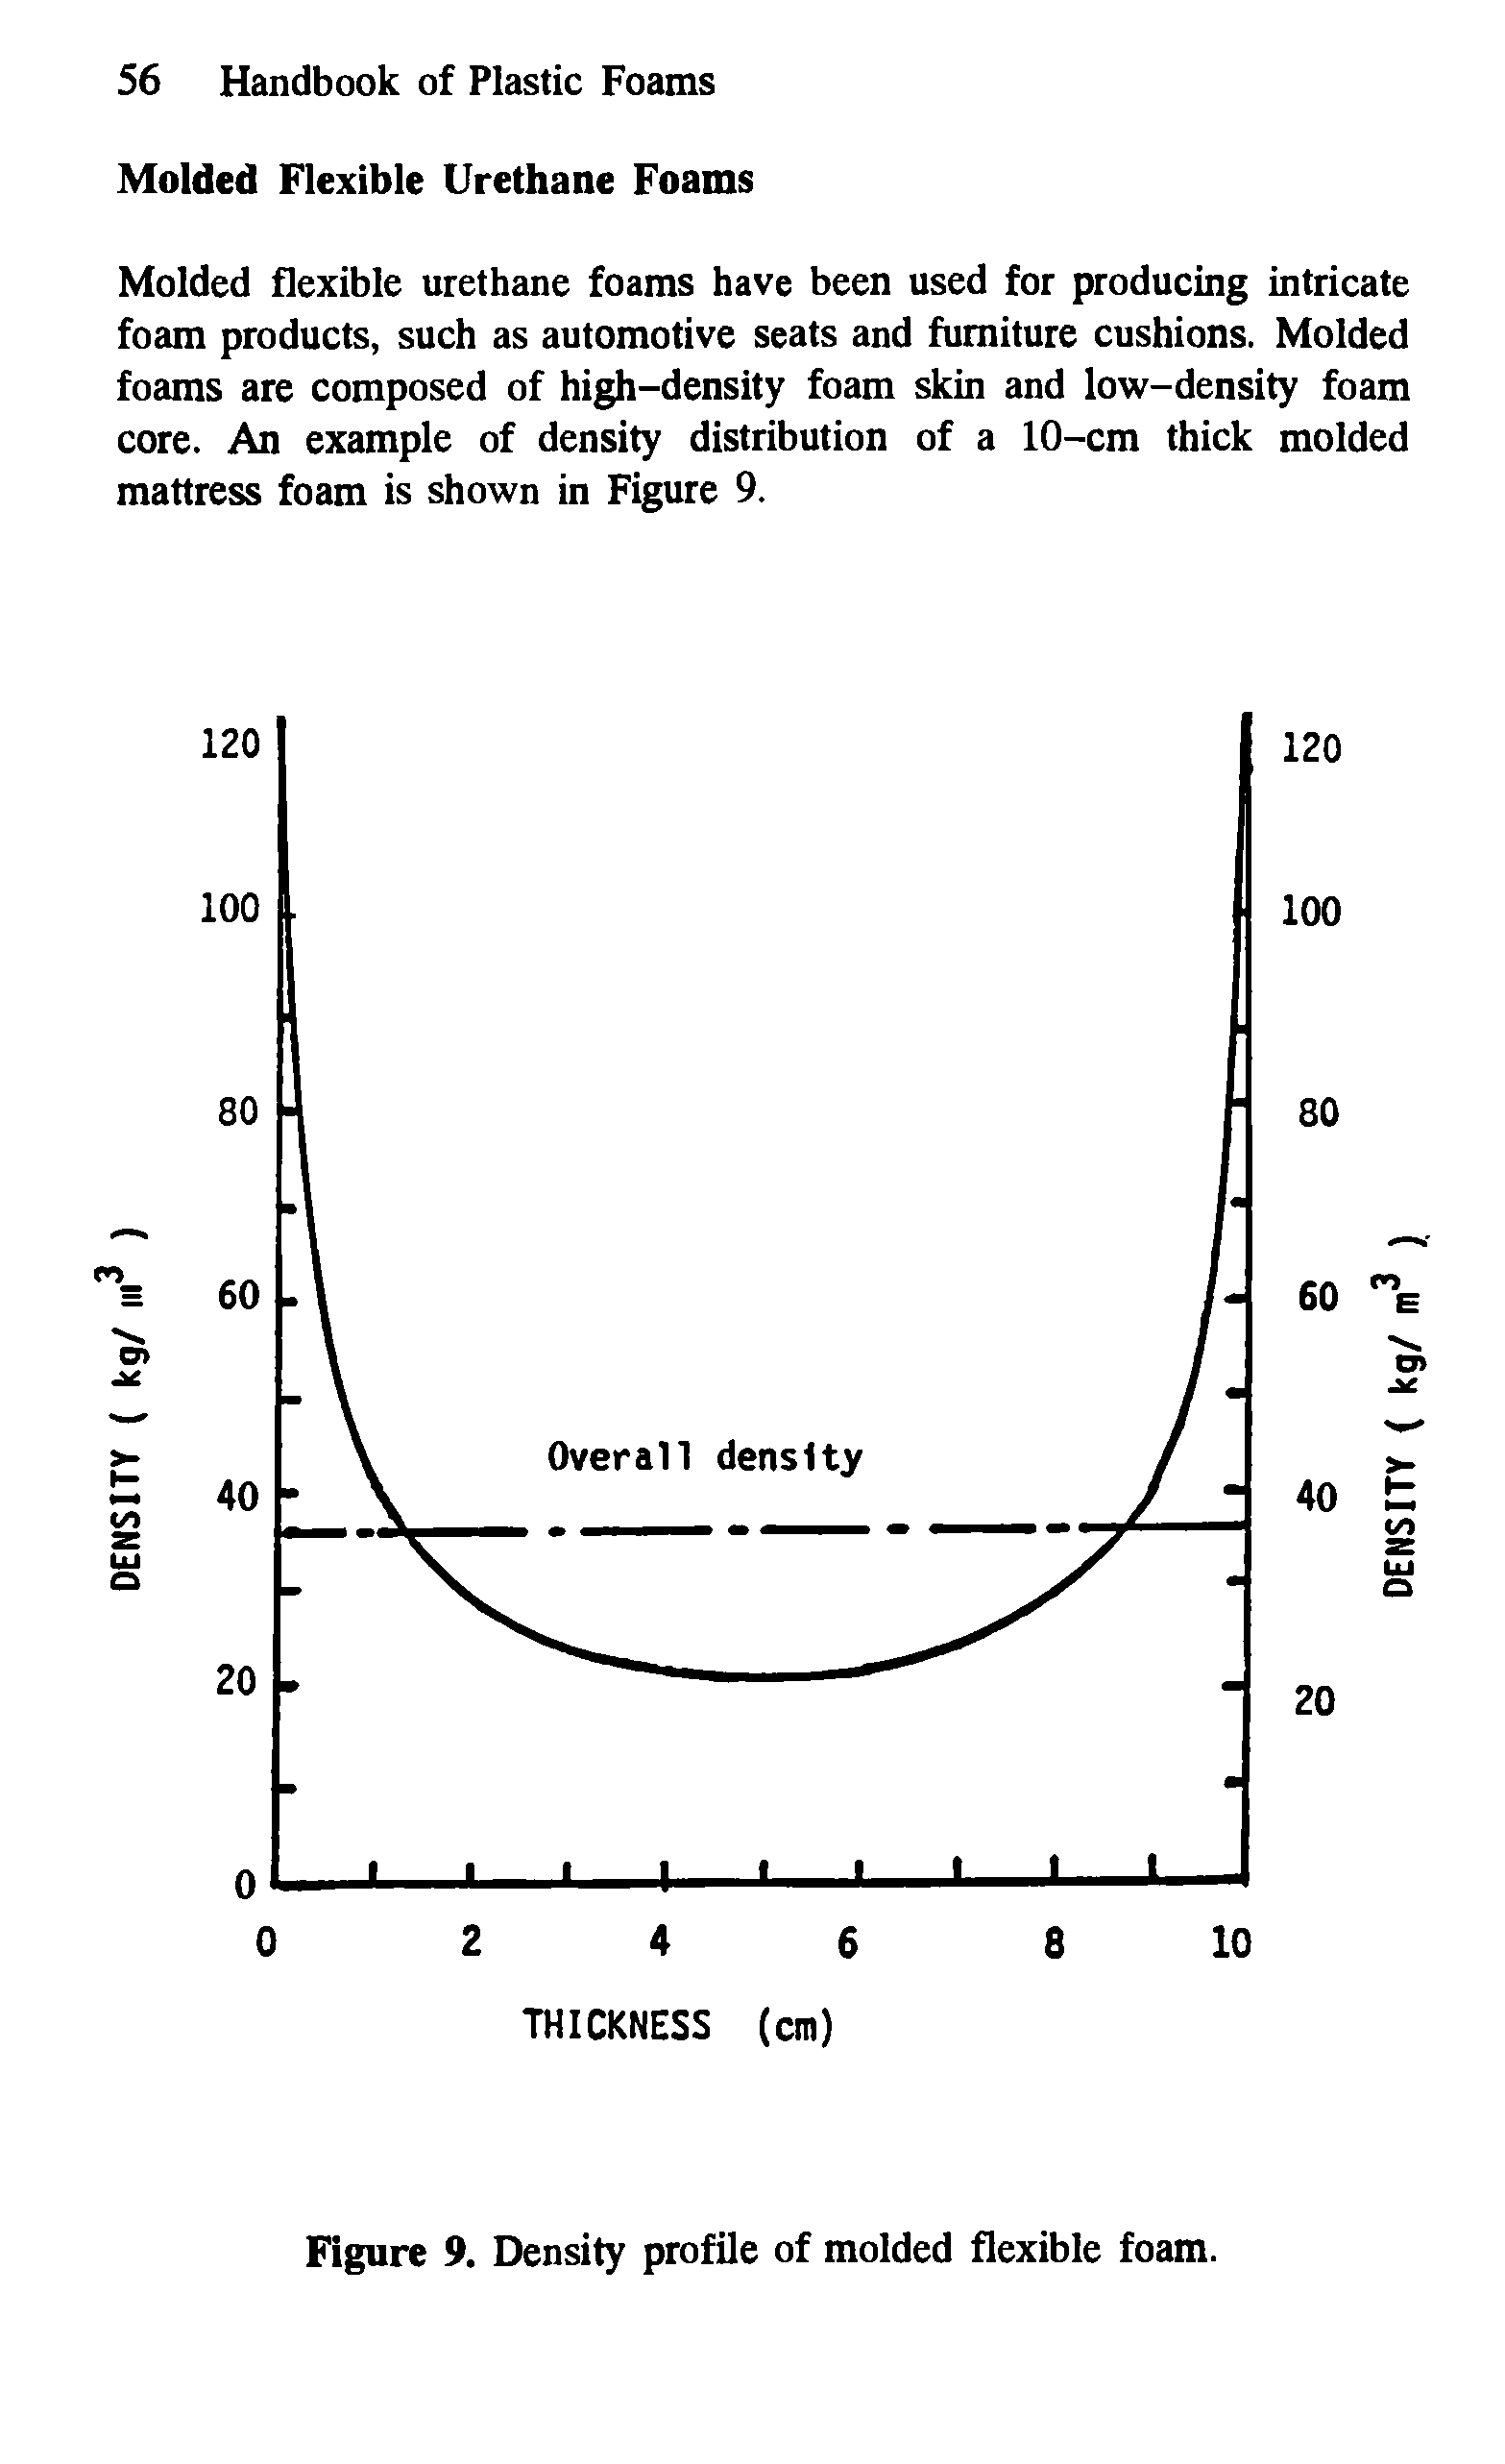 Figure 9. Density profile of molded flexible foam.